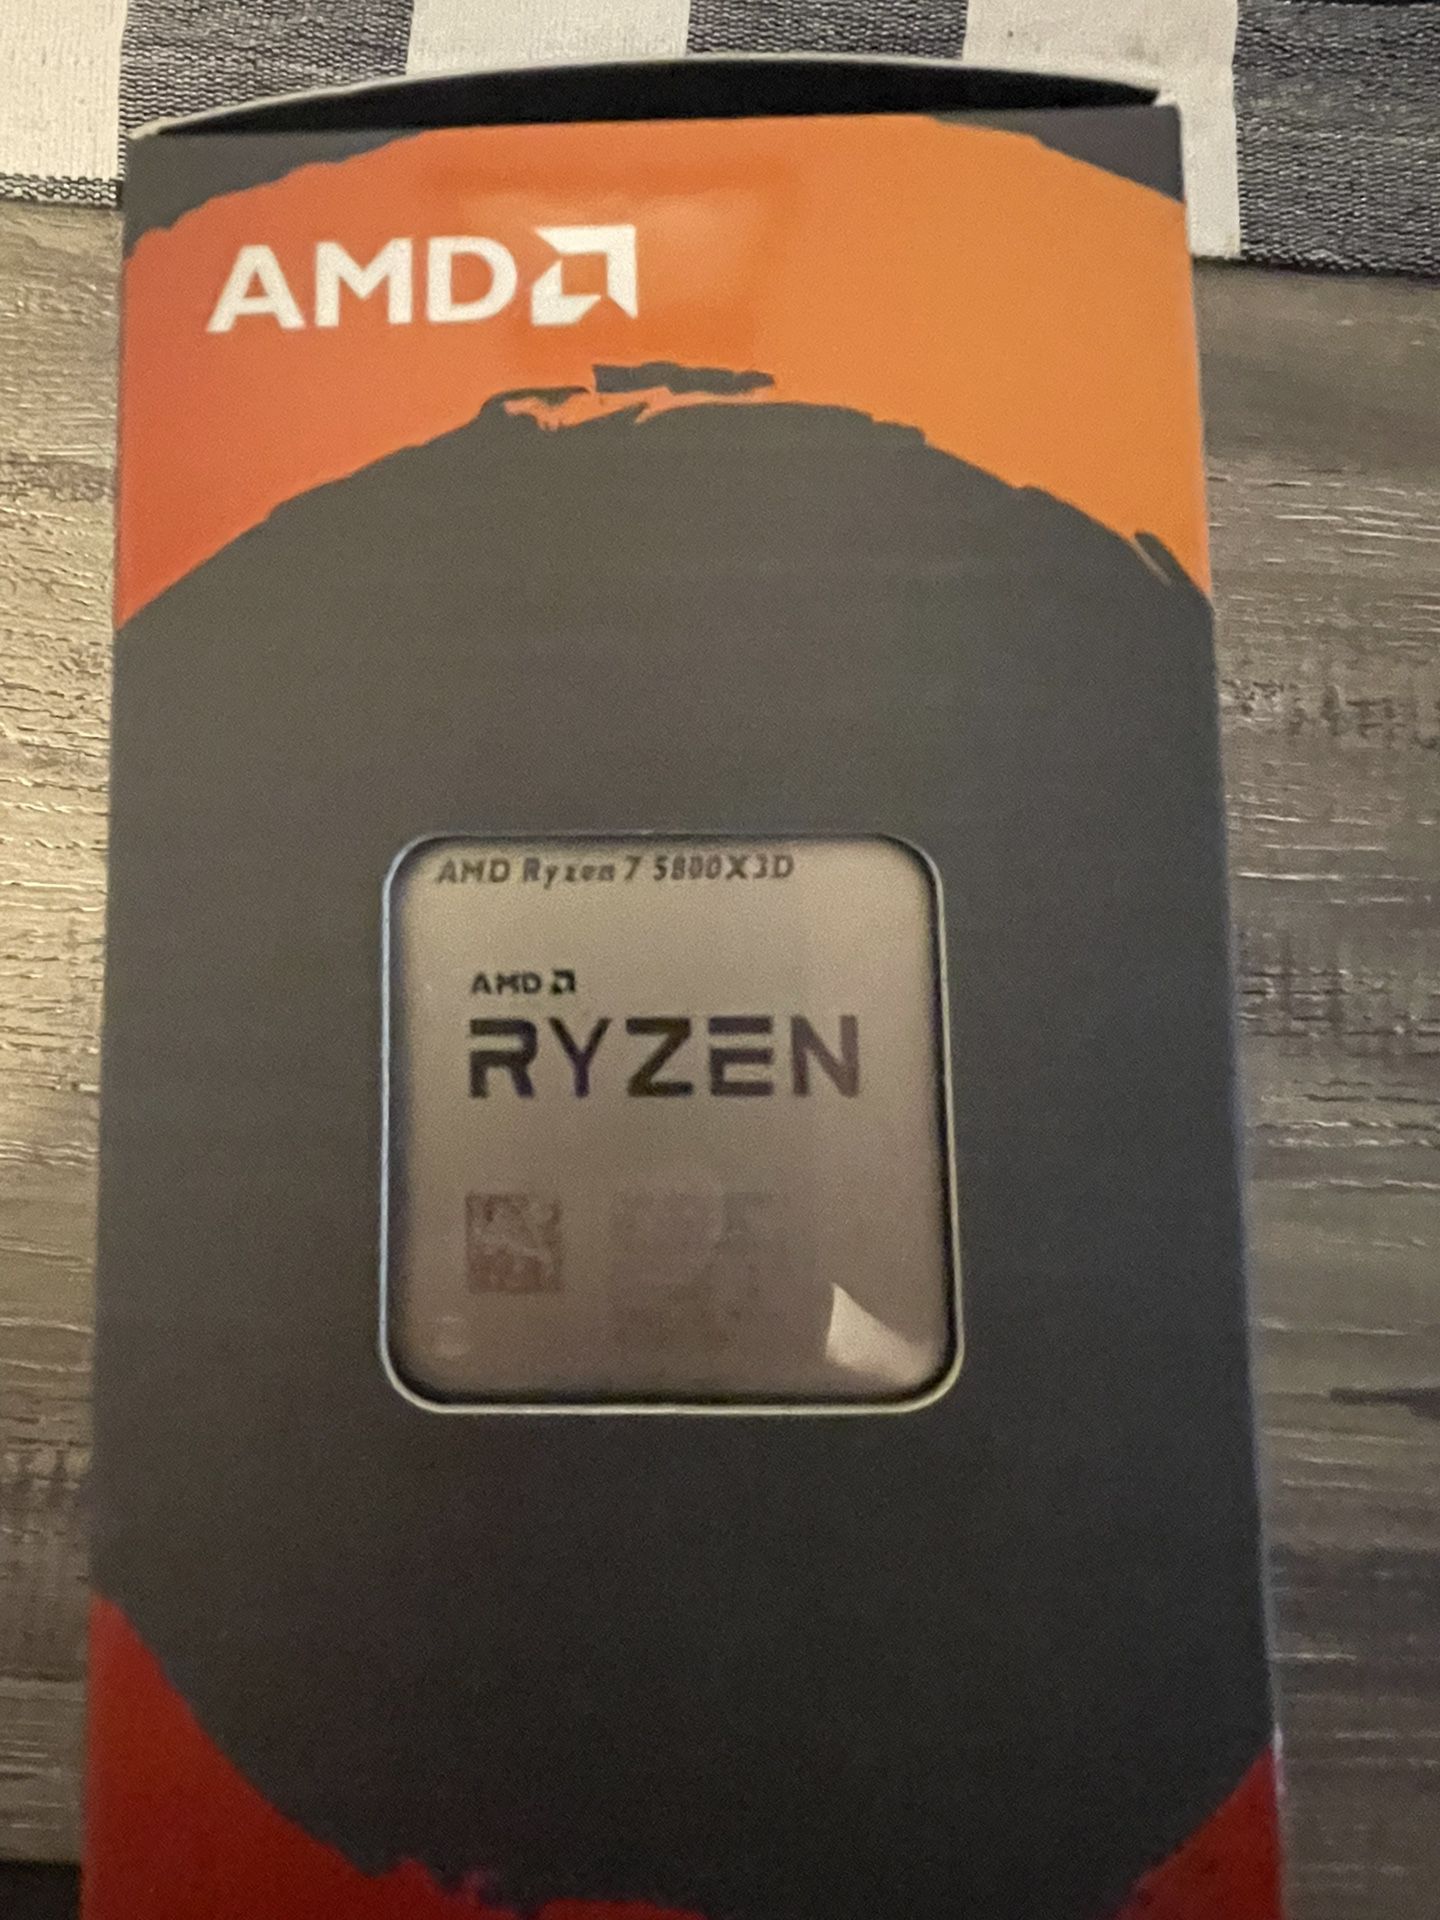 BRAND NEW Ryzen 7 5800x3d CPU